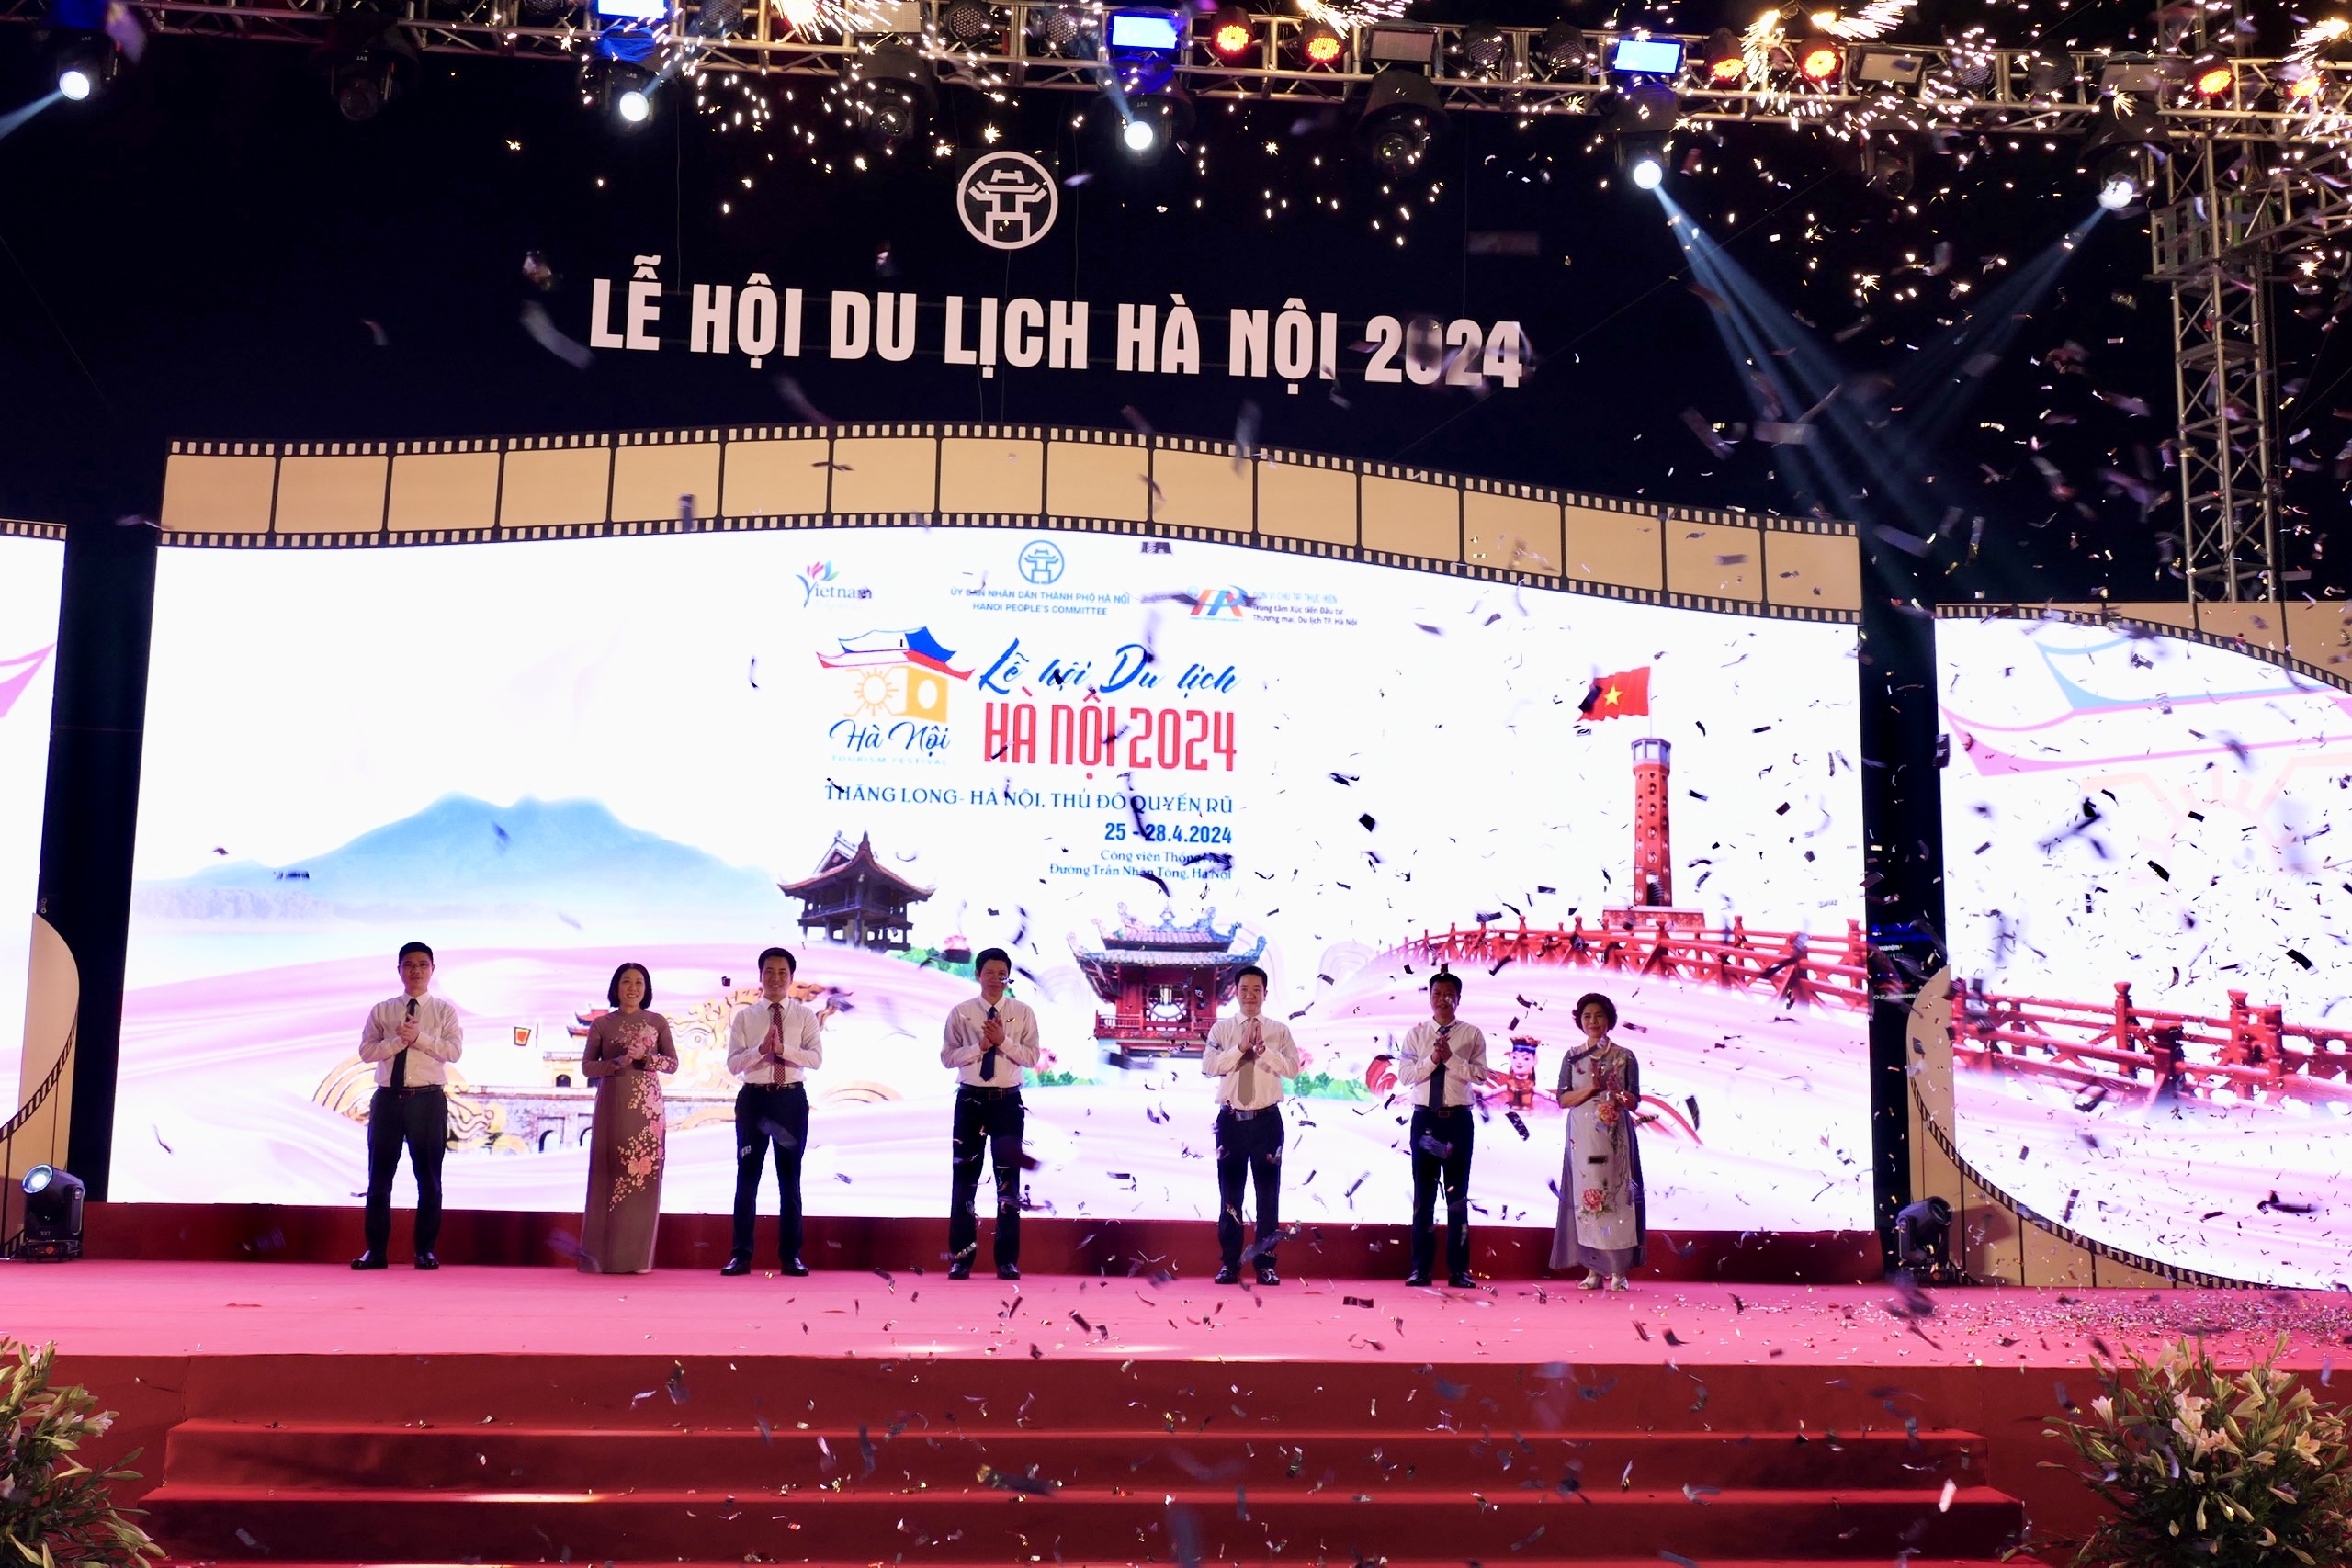 Khai mạc Lễ hội Du lịch Hà Nội năm 2024: “Thăng Long - Hà Nội, Thủ đô quyến rũ” - ảnh 4